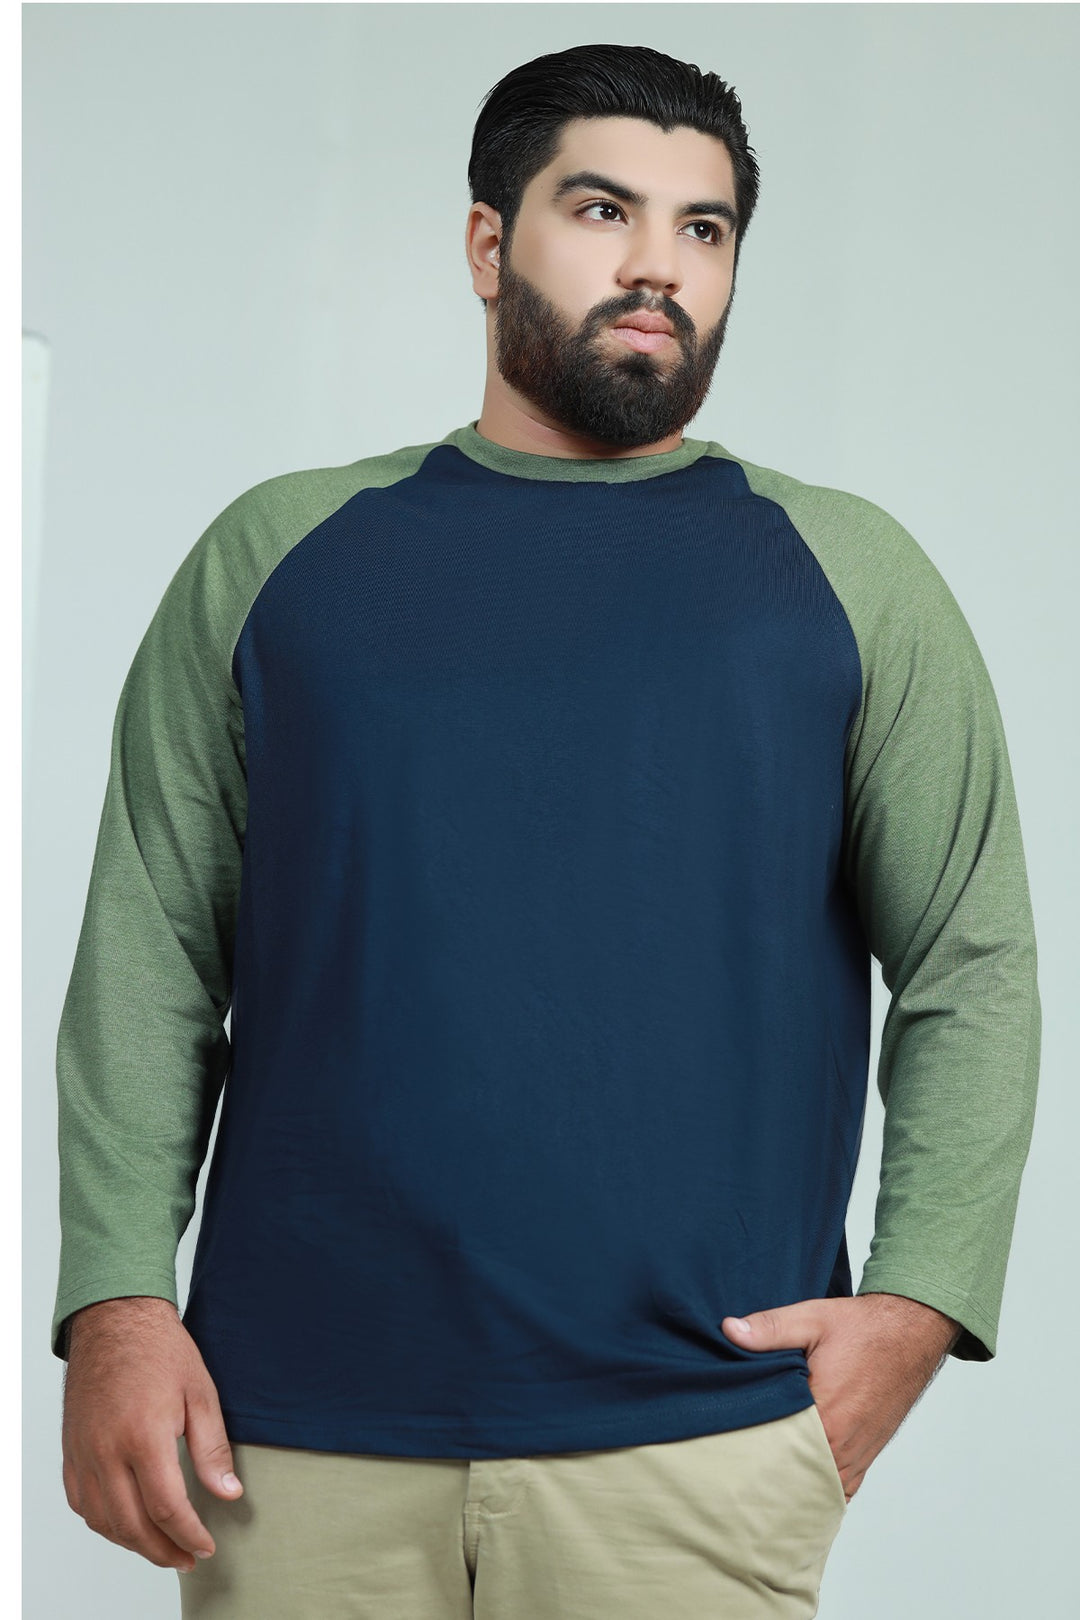 Navy Blue Raglan T-Shirt (Plus Size) - W21 - MT0131P